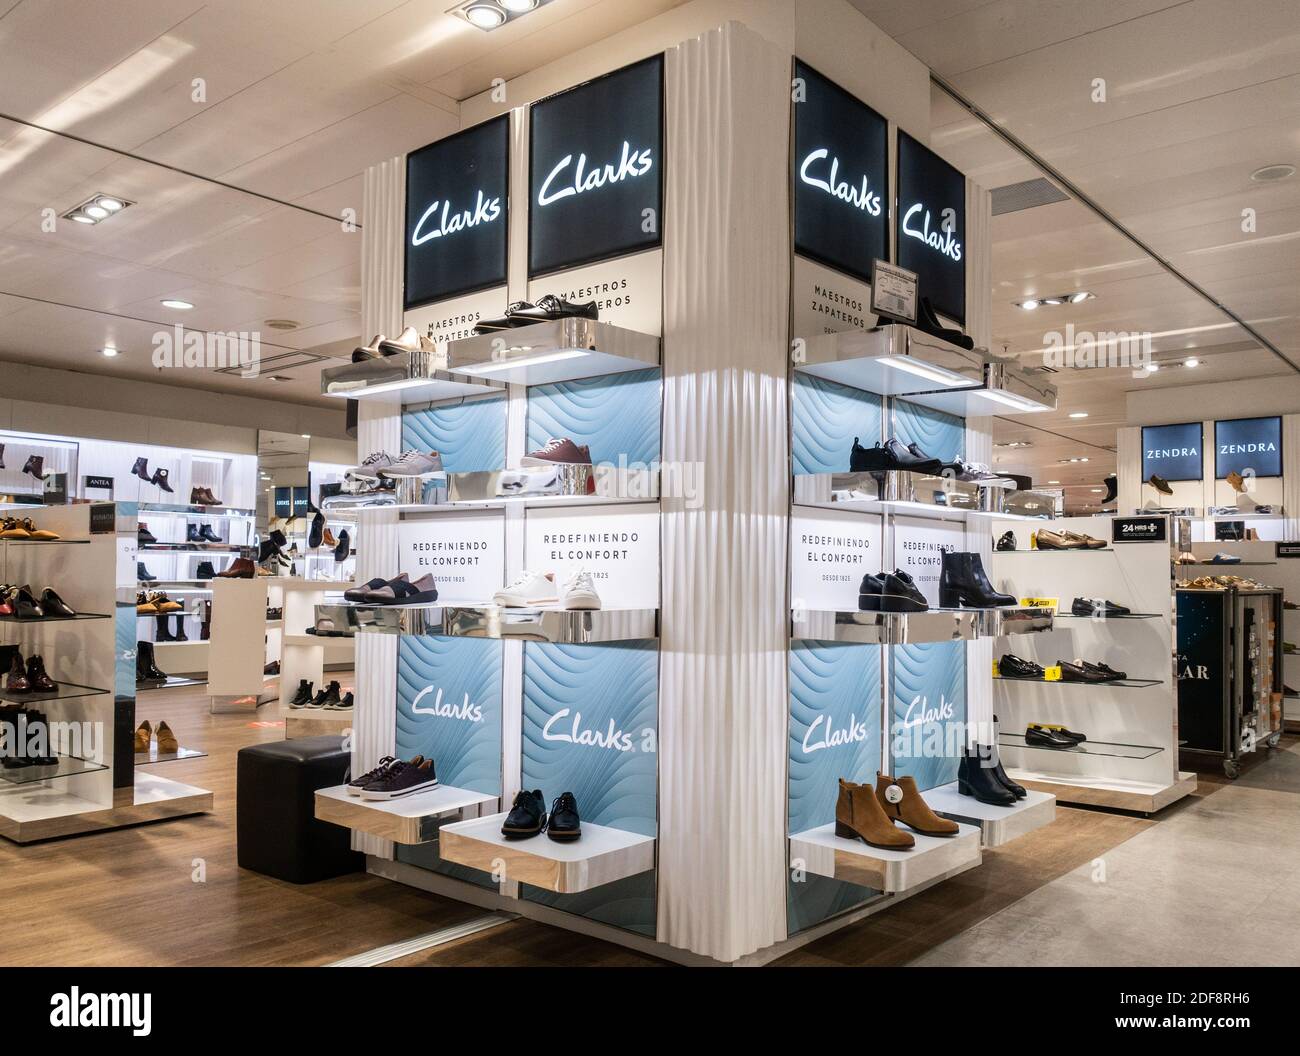 Mala fe Economía Adepto Zapatos Clarks en la tienda de Corte Inglés en España Fotografía de stock -  Alamy